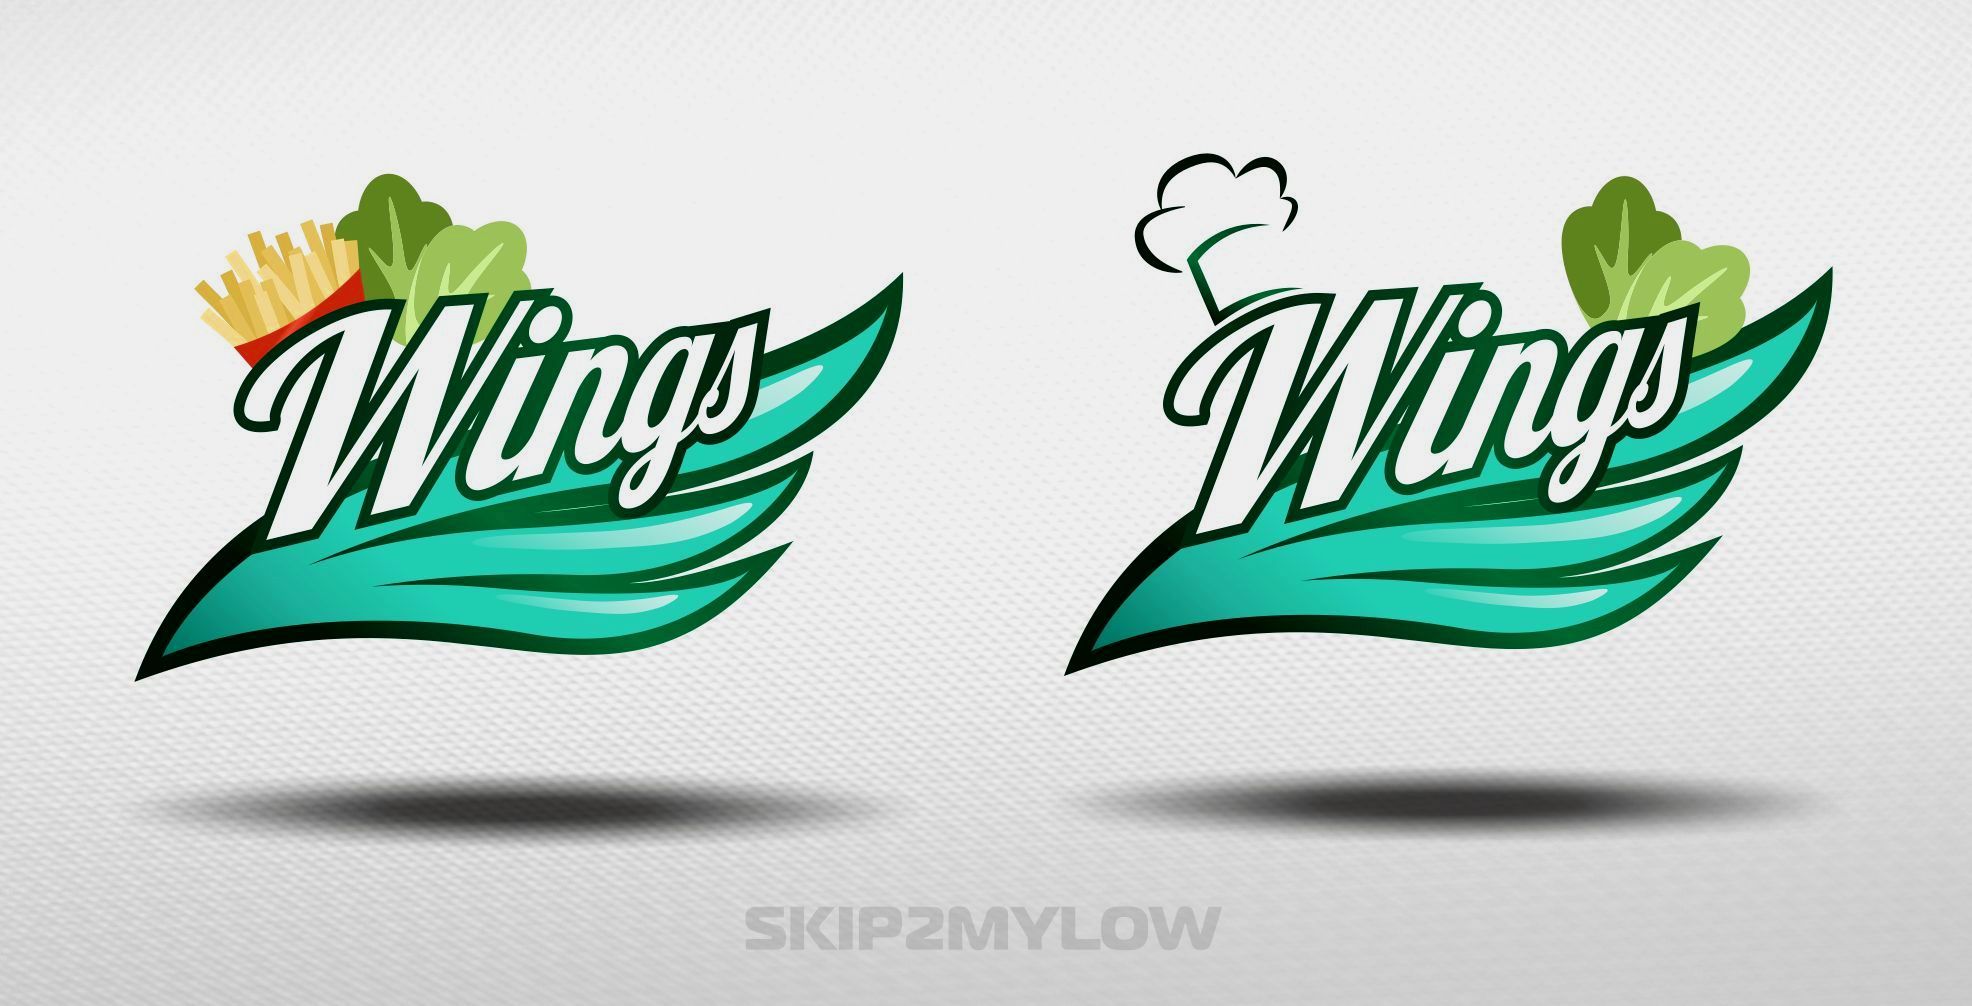 Логотип для Wings - дизайнер skip2mylow